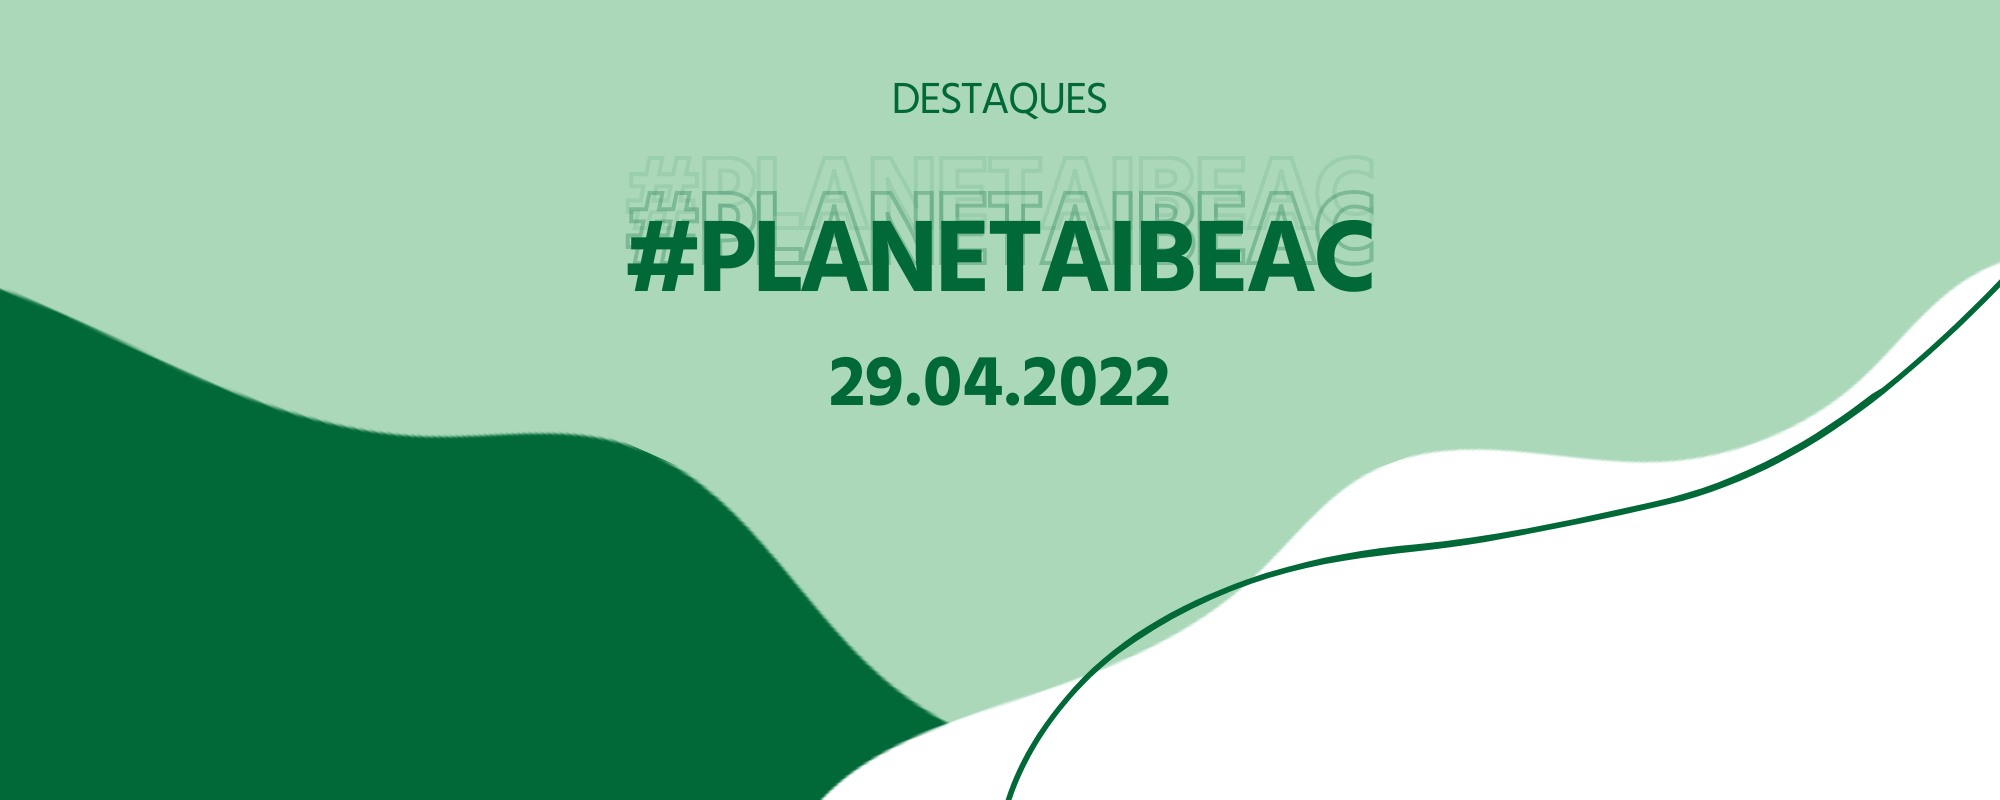 Destaques #PlanetaIbeac 29.04.2022